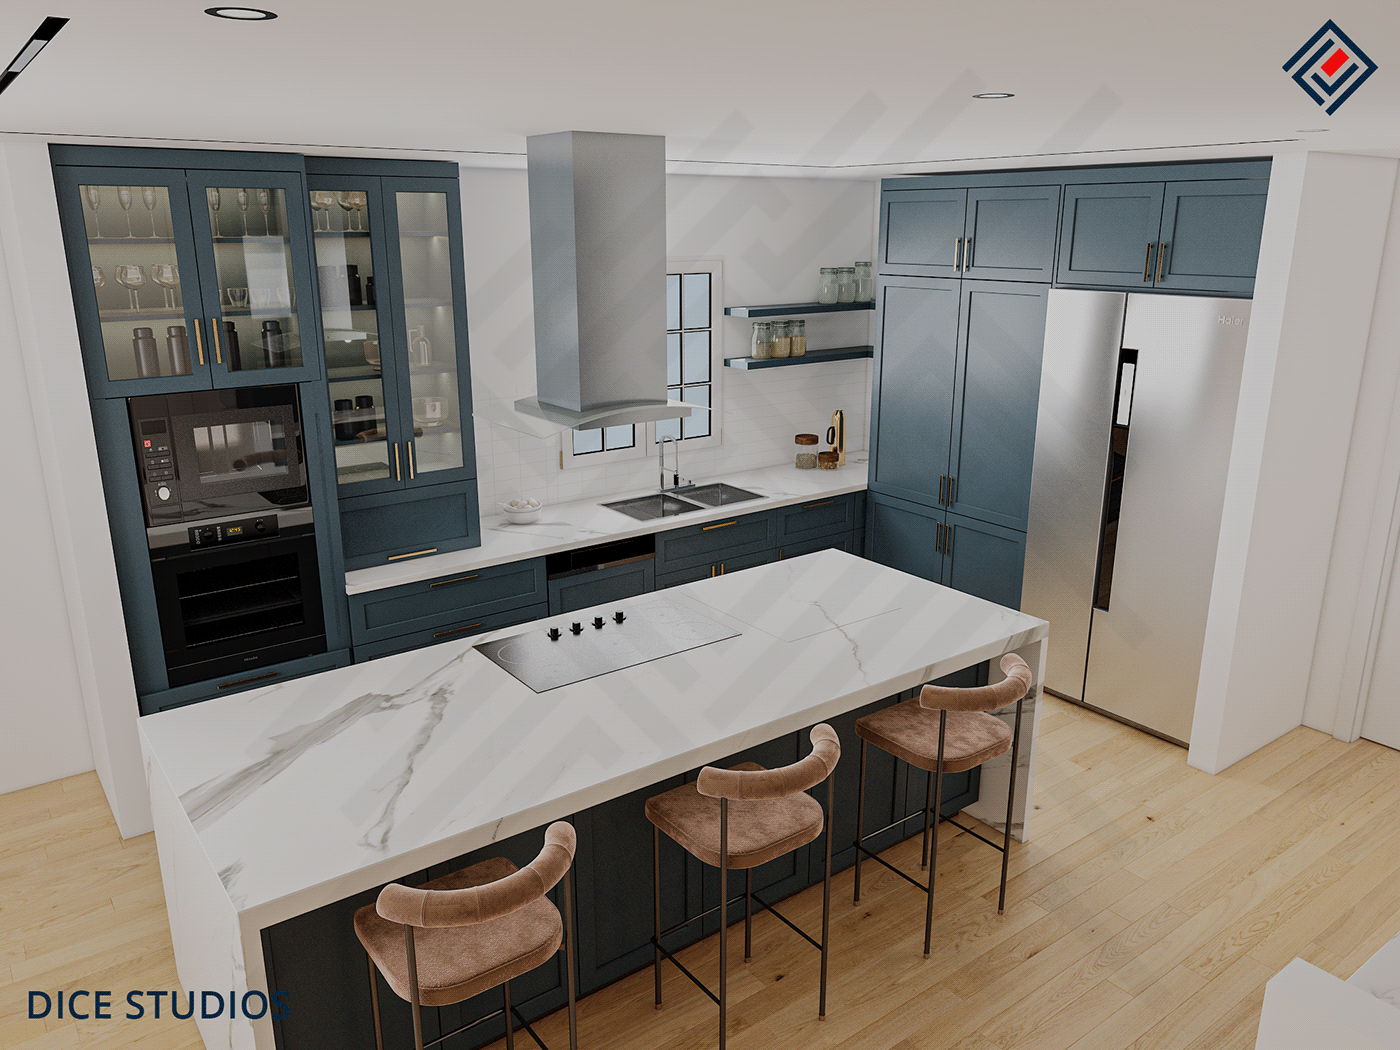 3D architecture Freelance Interior interior design  kitchen modern Render visualization vray